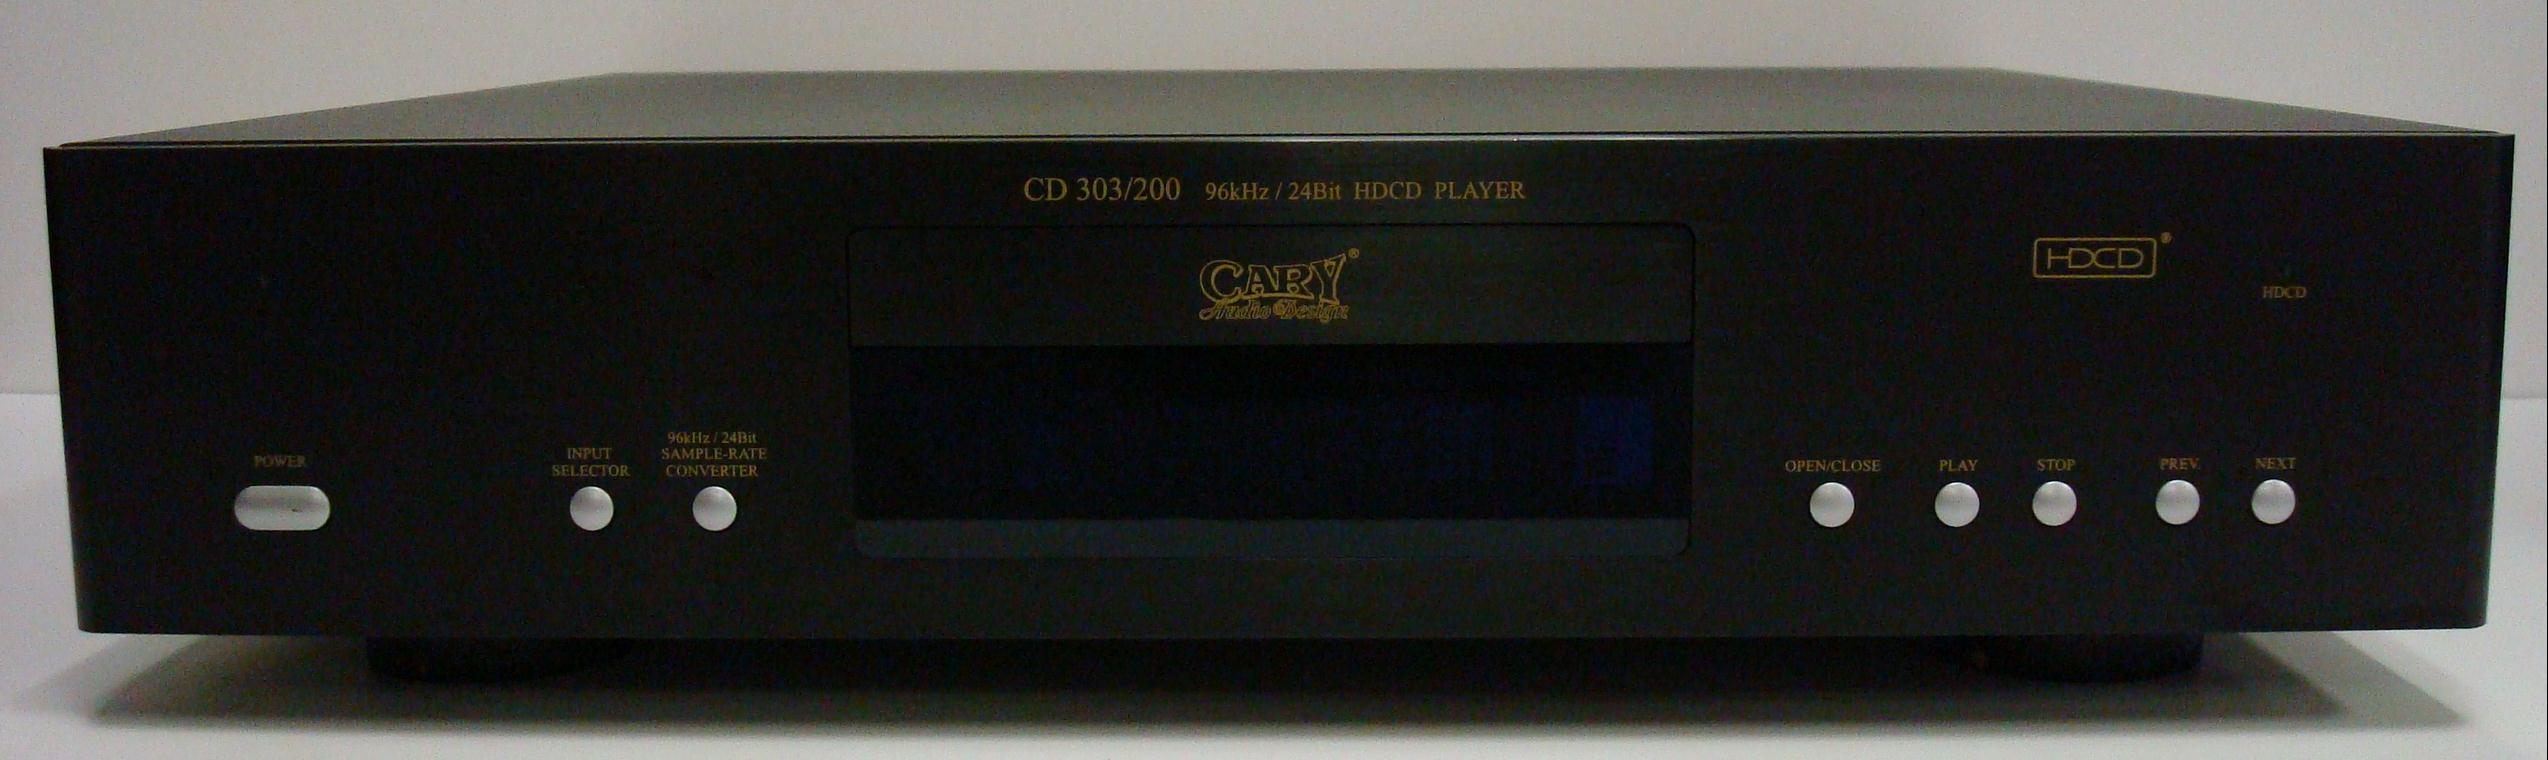 Cary CD 303/200